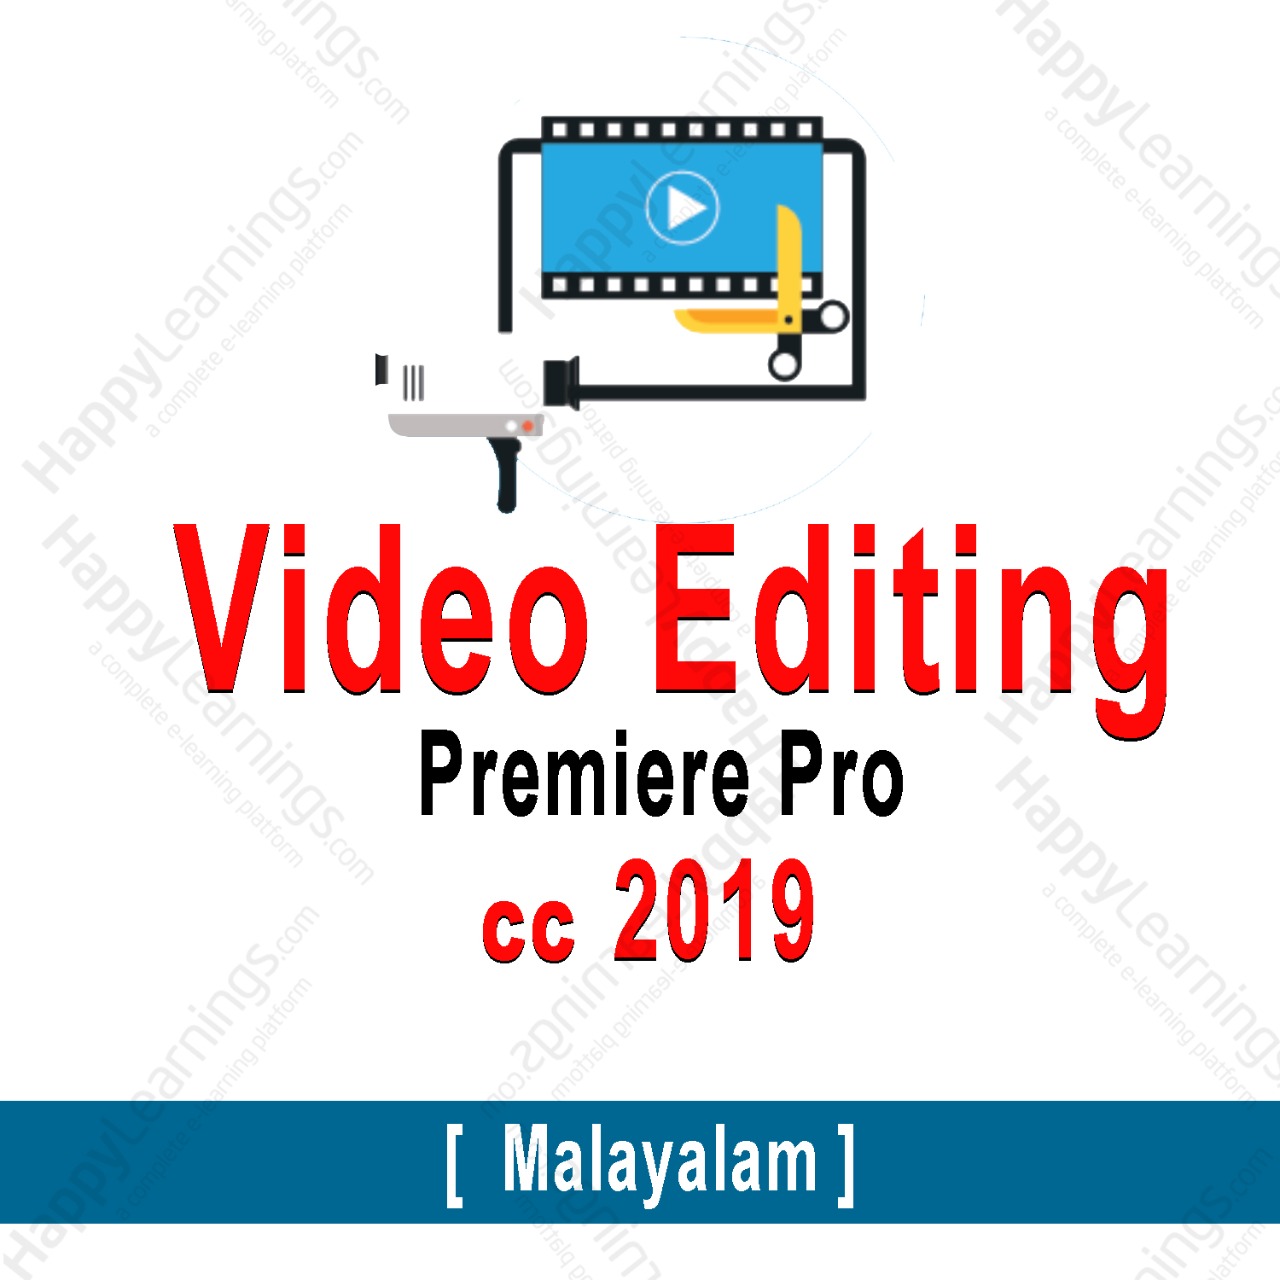 Video Editing -Adobe Premiere Pro